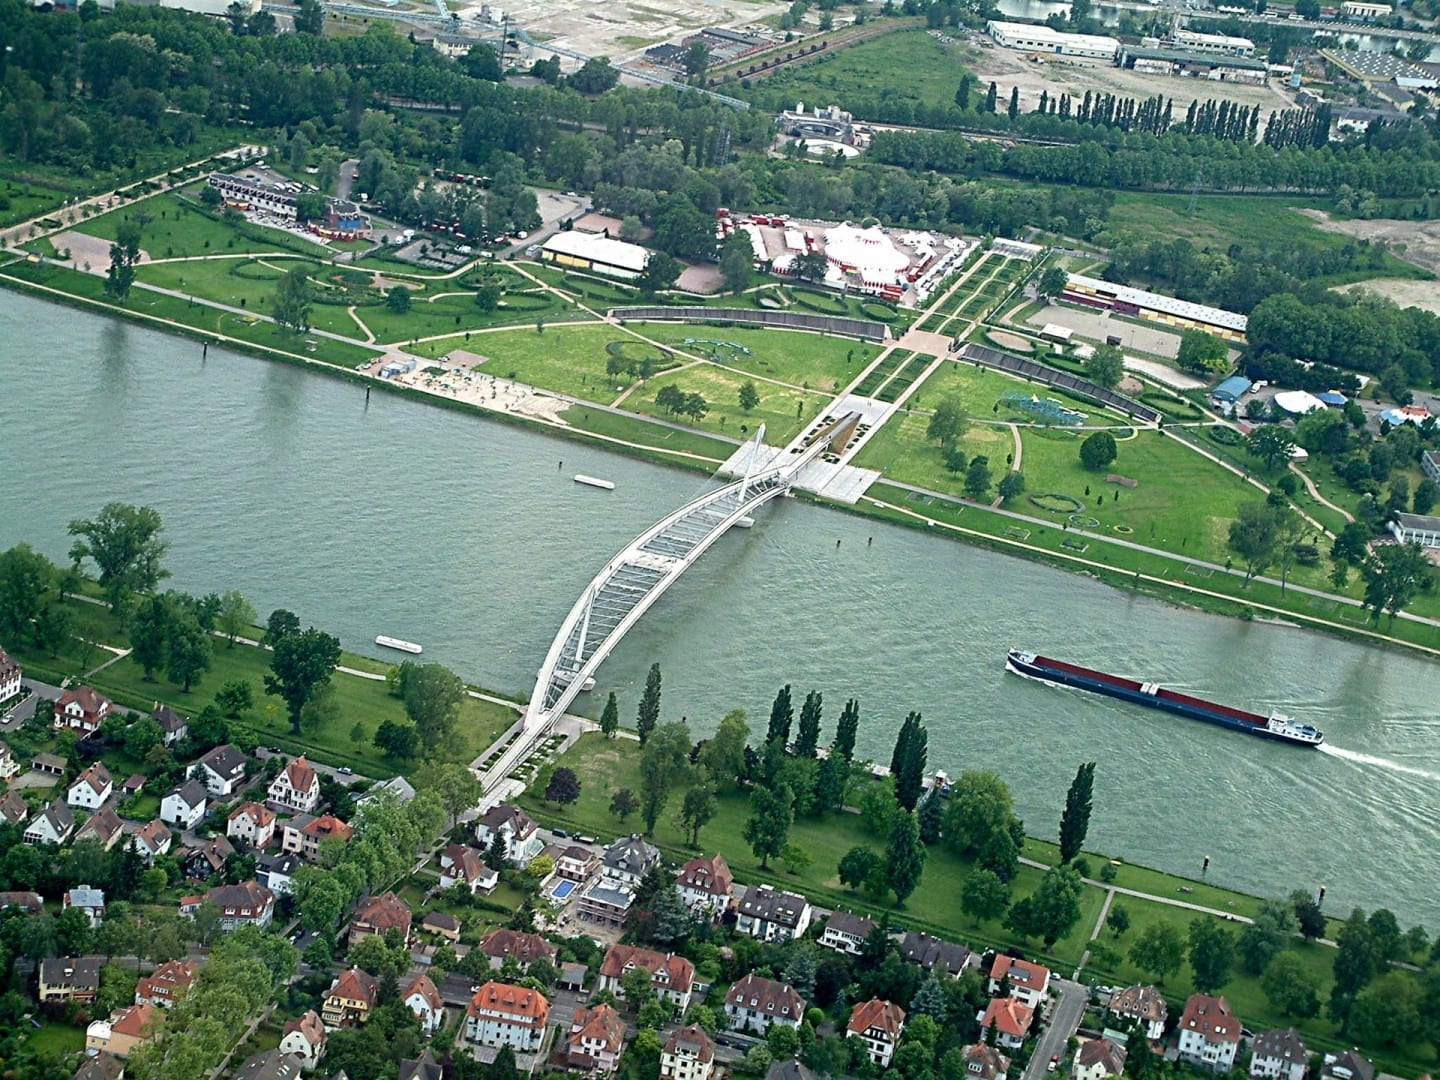 Vista aérea del Rin, mostrando la Pasarela de los Dos Ríos que cruza el río desde Estrasburgo al lado alemán en Kehl Estrasburgo Francia